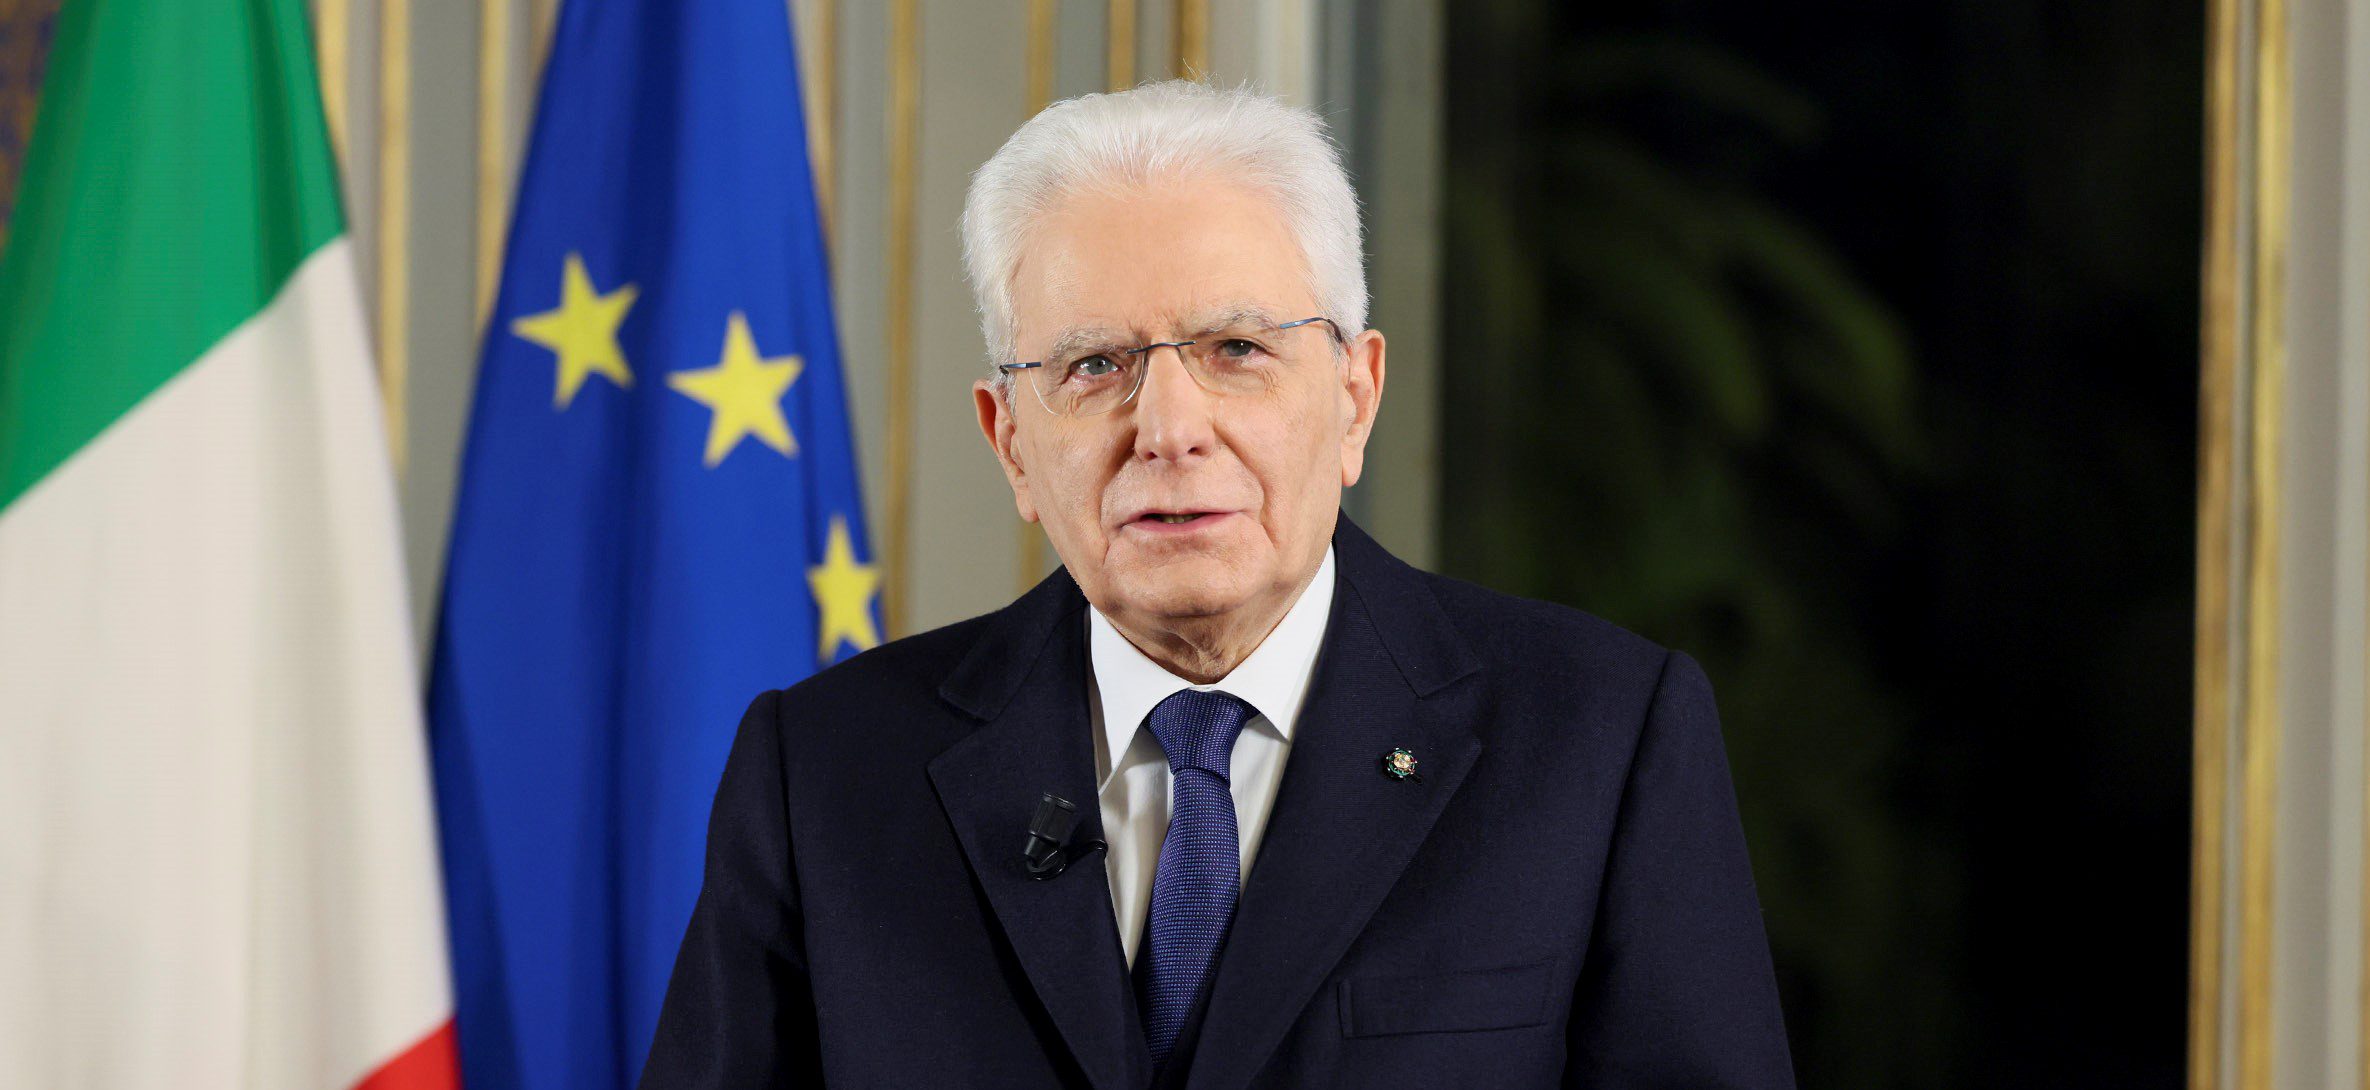 Mattarella eletto per il secondo mandato a presidente della Repubblica